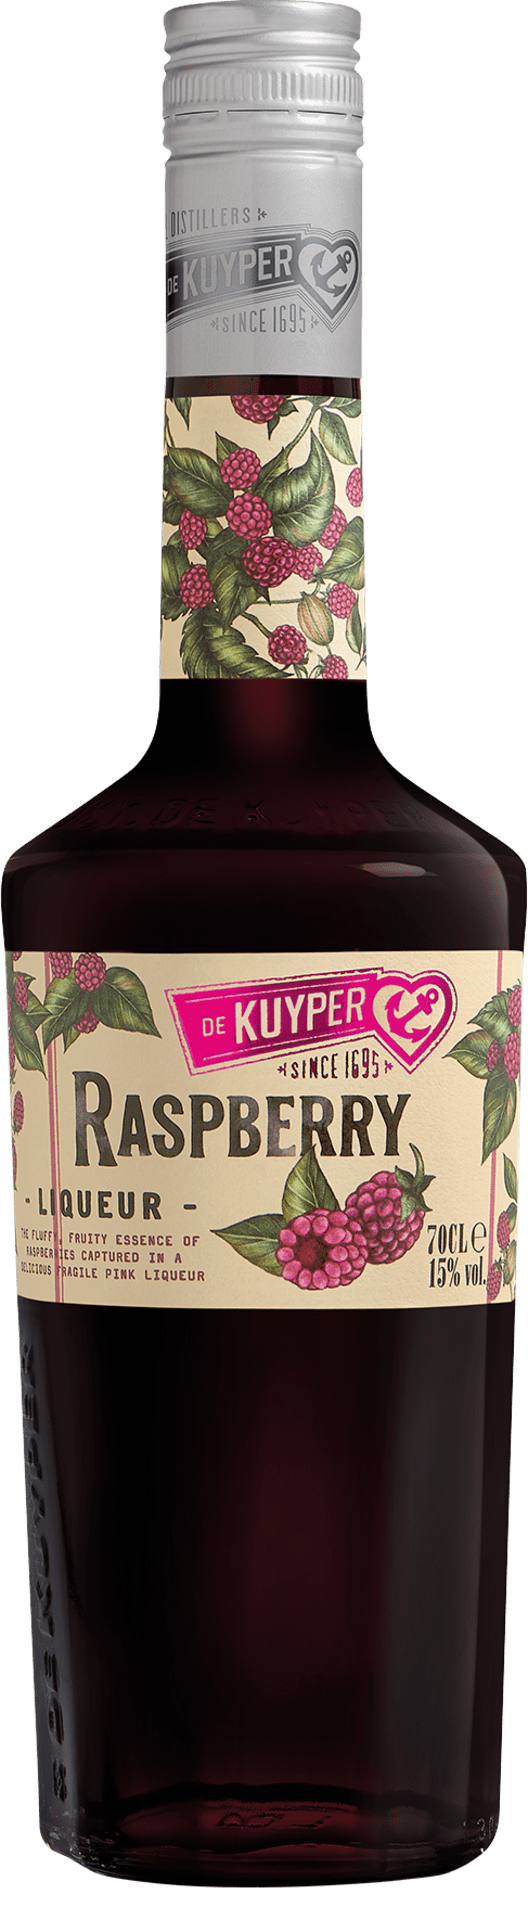 Raspberry Liqueur